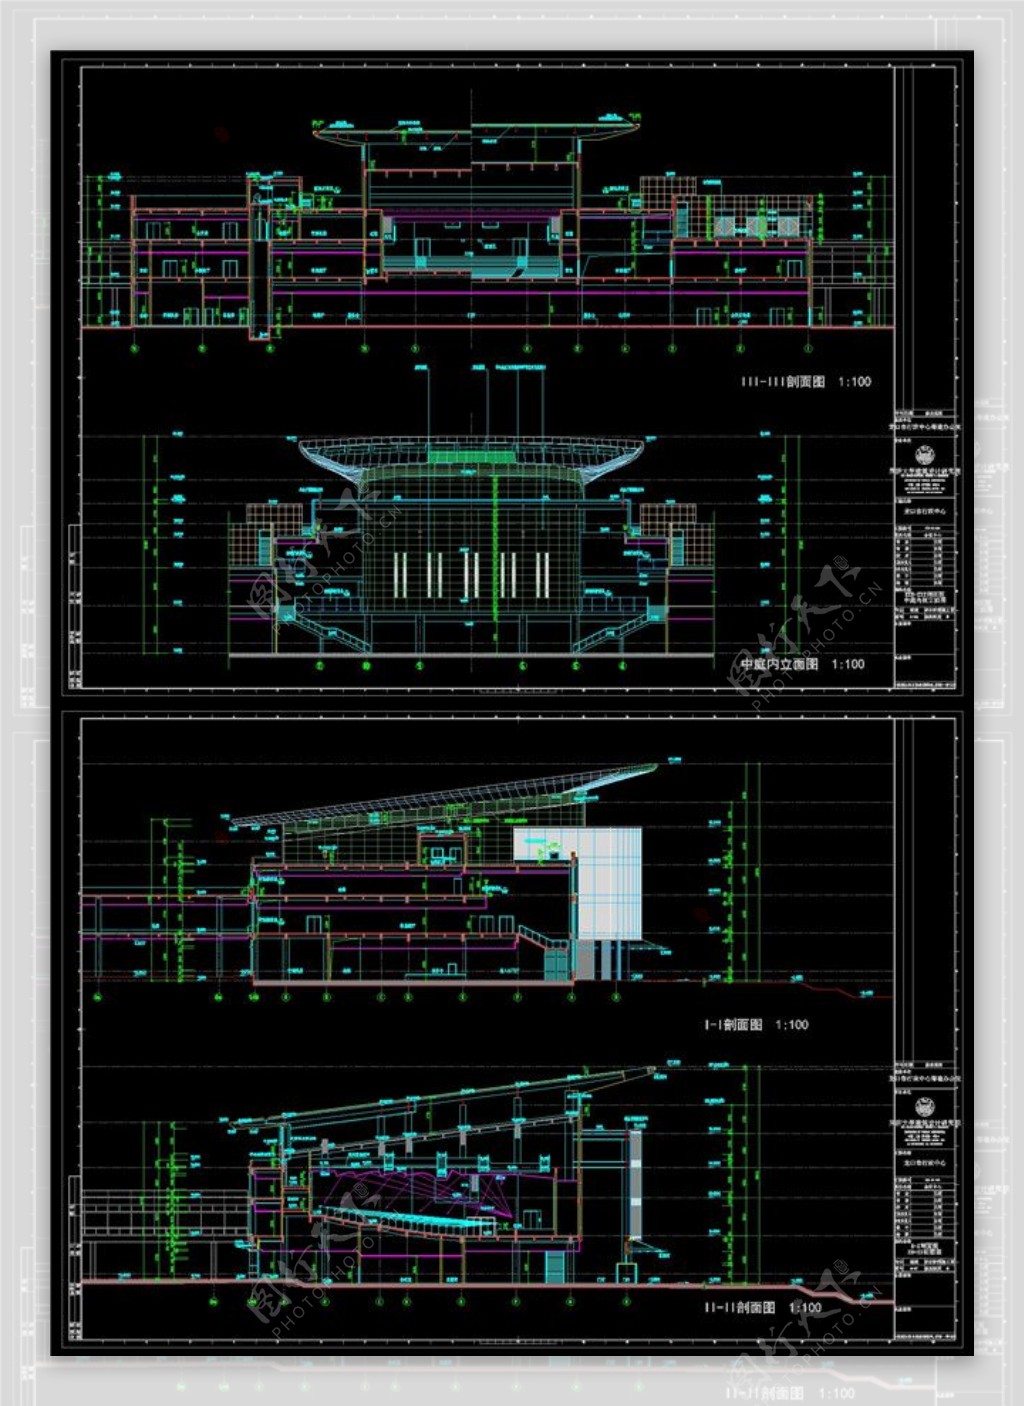 会议中心设计素材CAD图纸